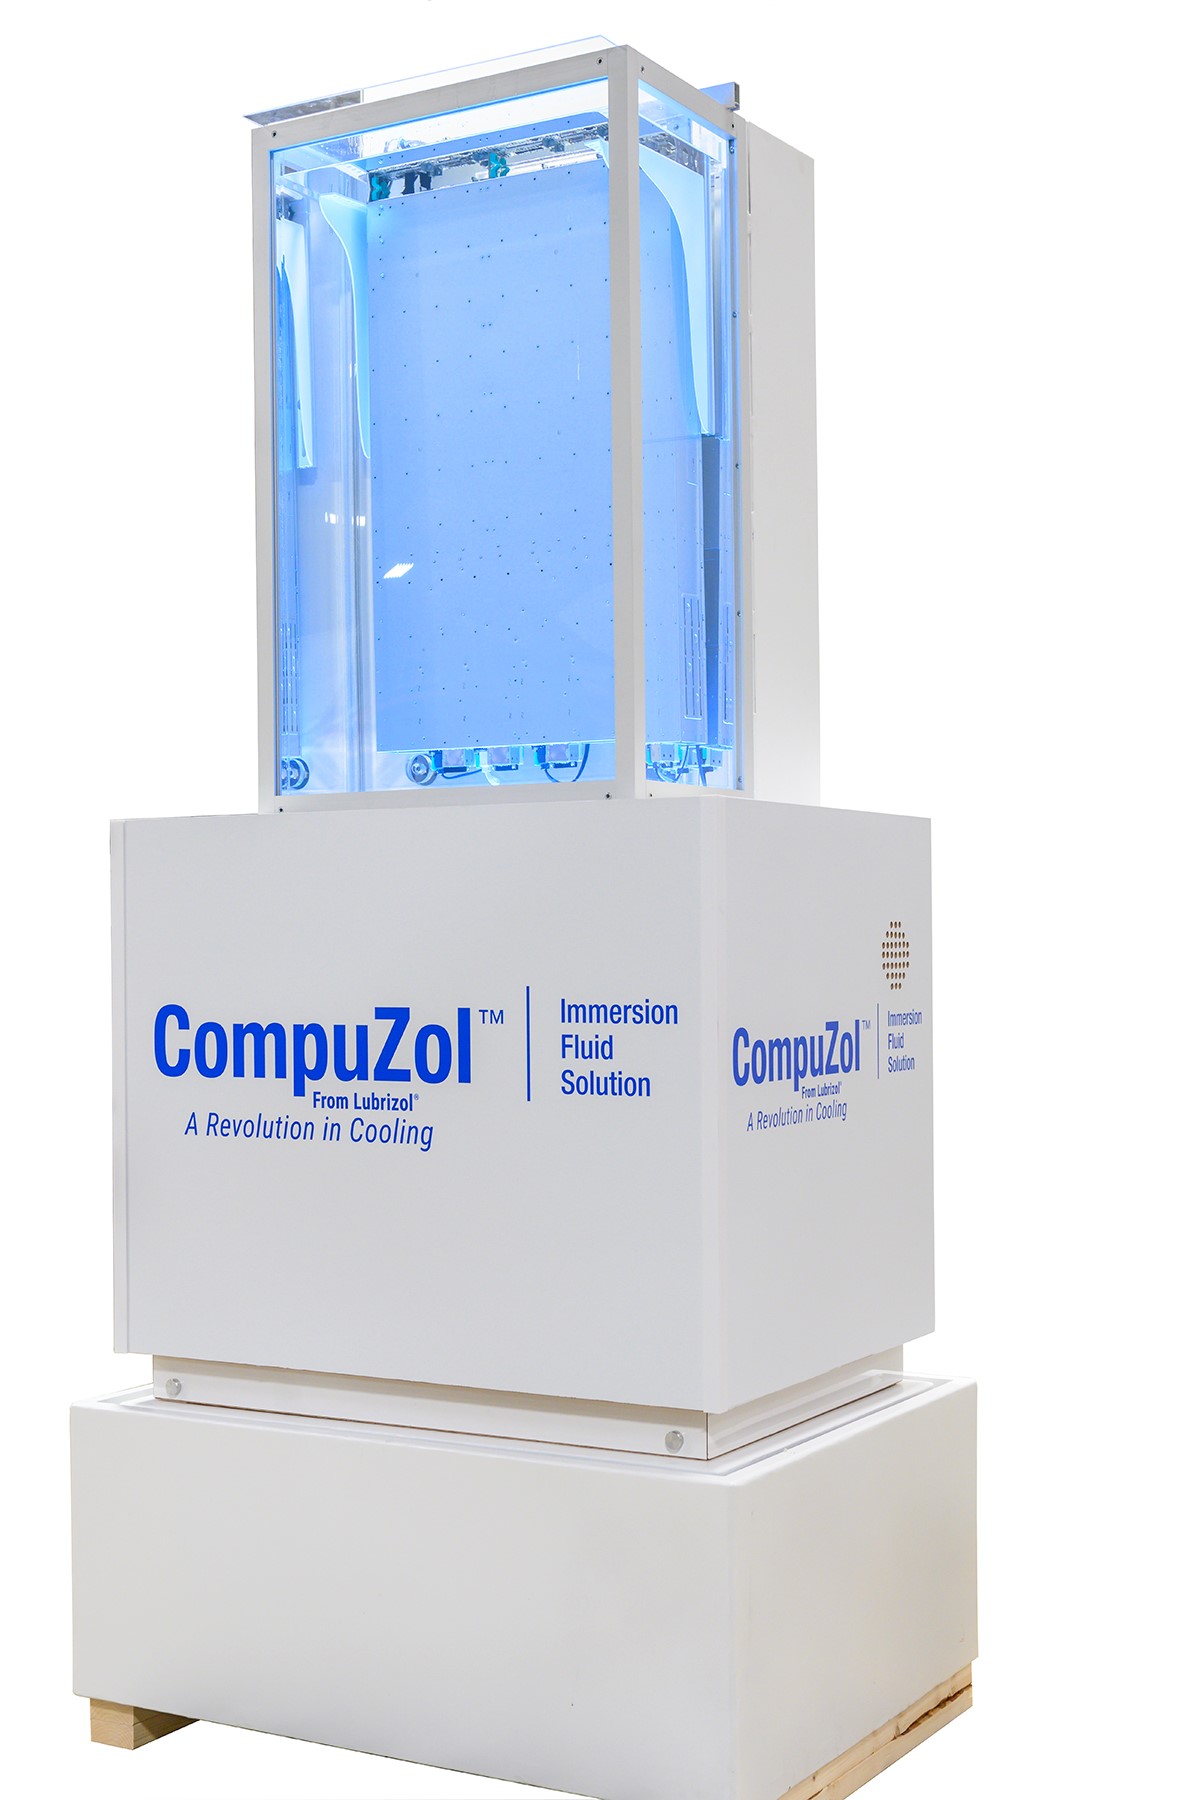 Un servidor preparado para la inmersión de Intel® sumergido en una unidad de vidrio hecha a medida y llena de fluido refrigerante de inmersión de CompuZol